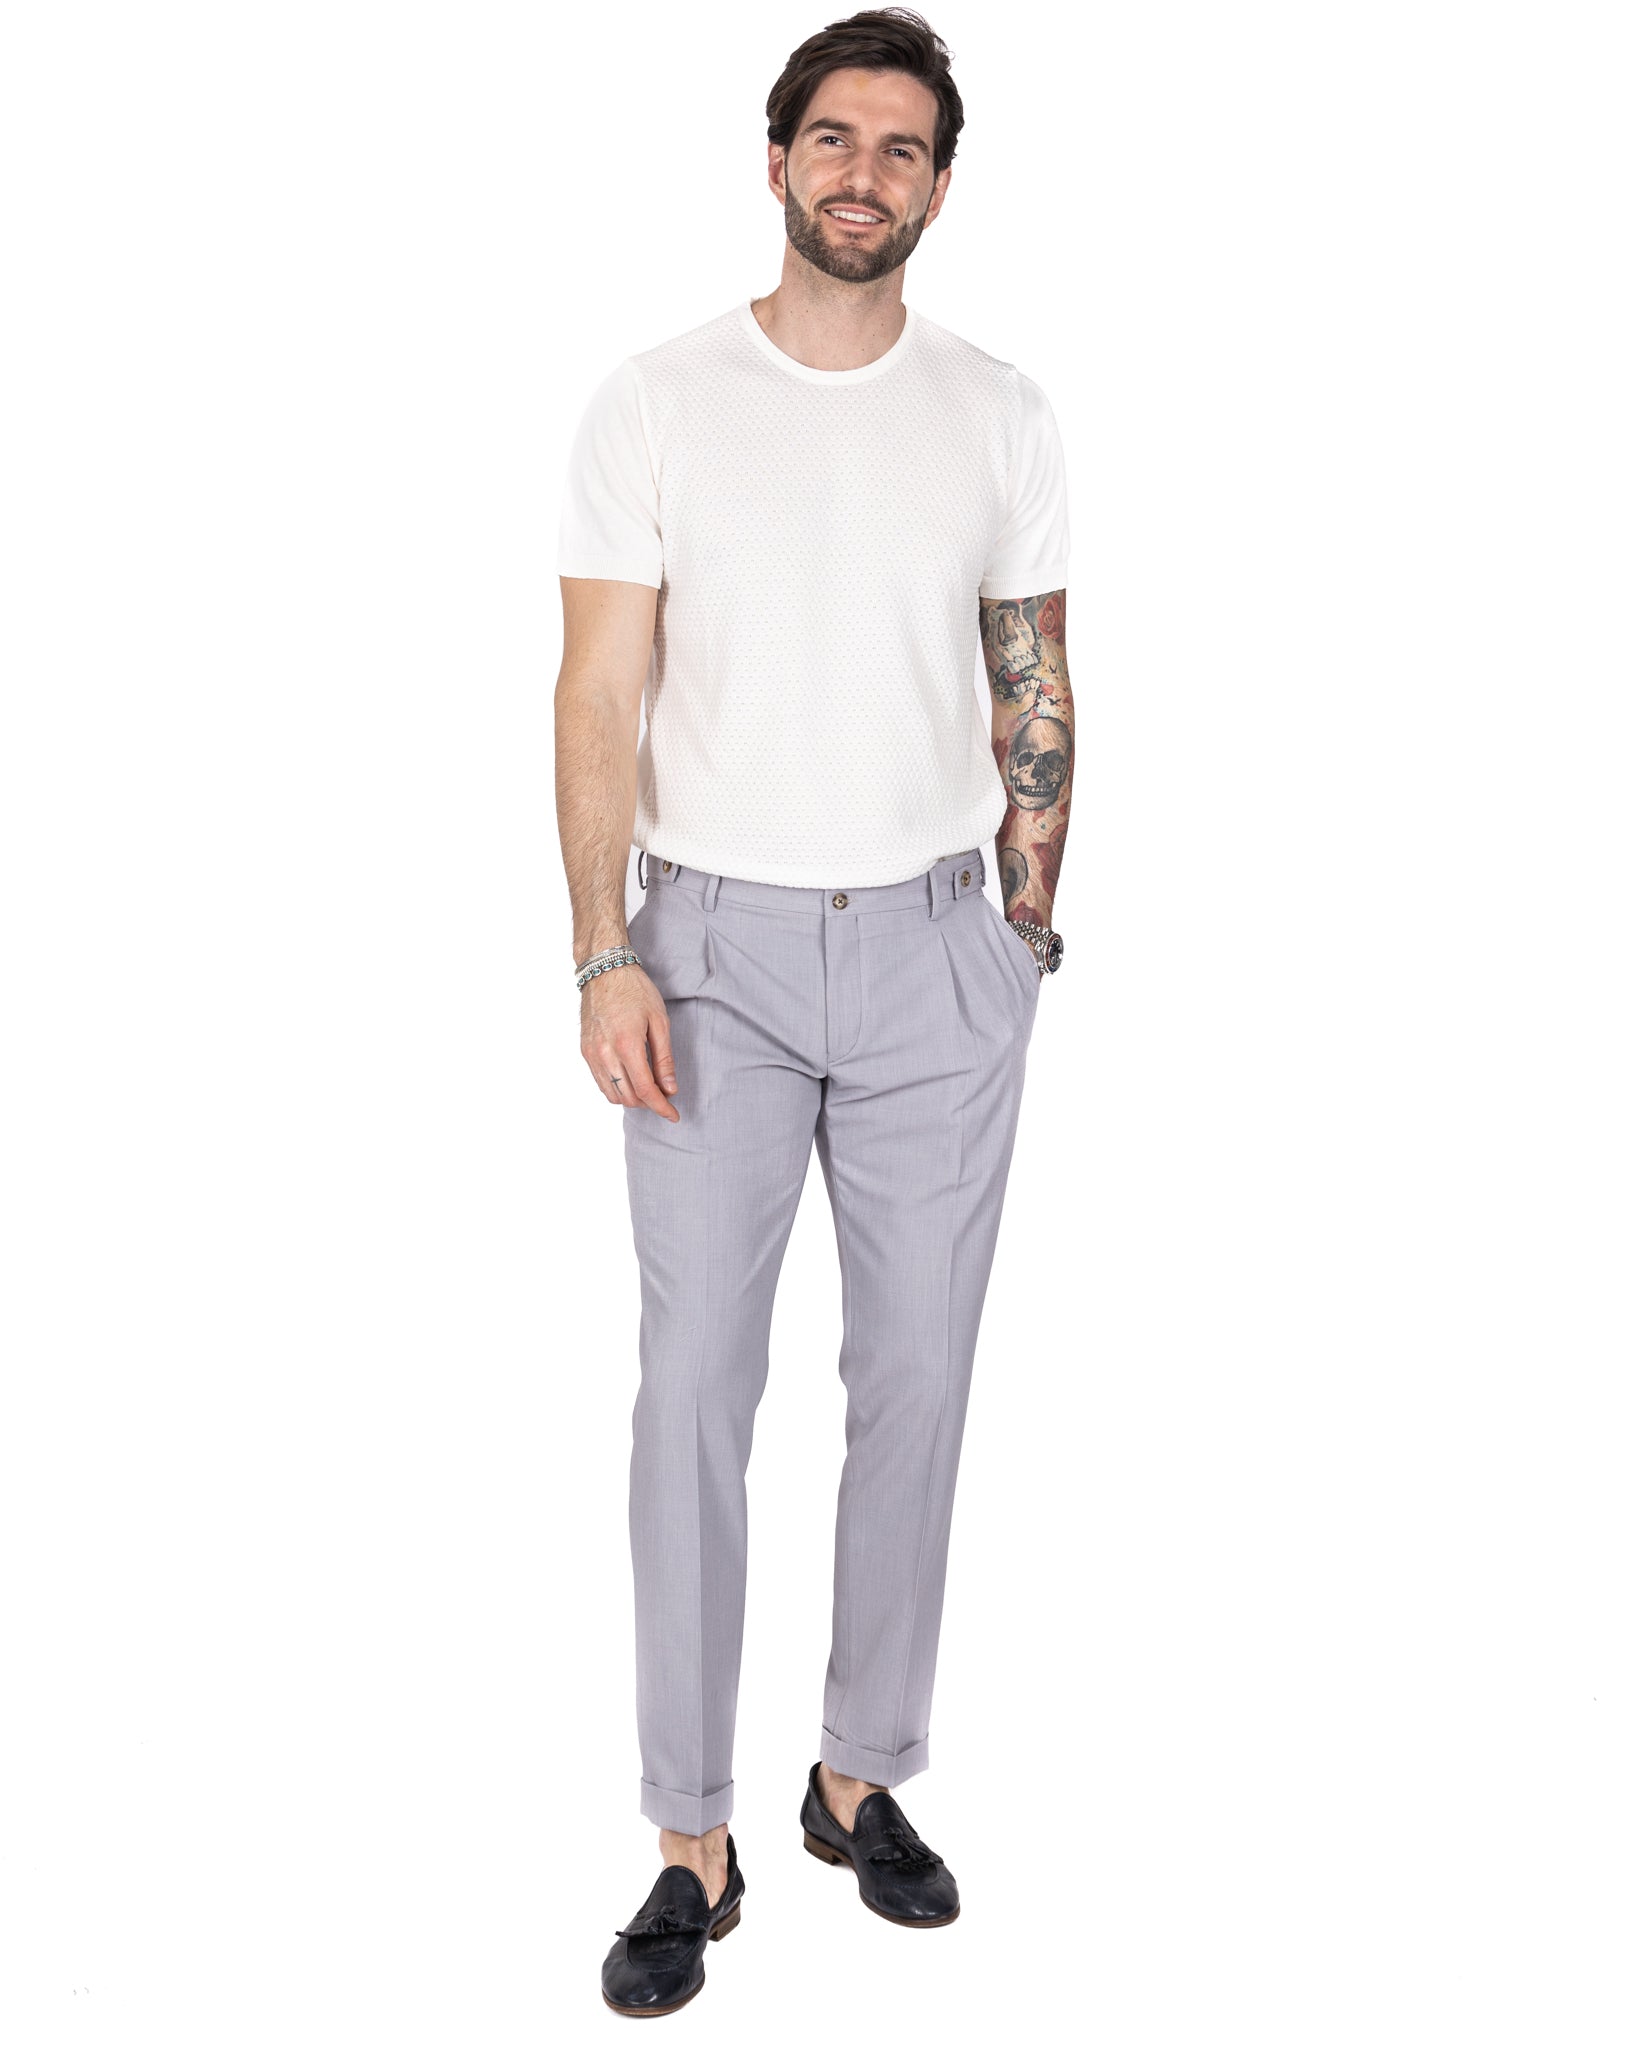 Milano - pantalone basic grigio chiaro